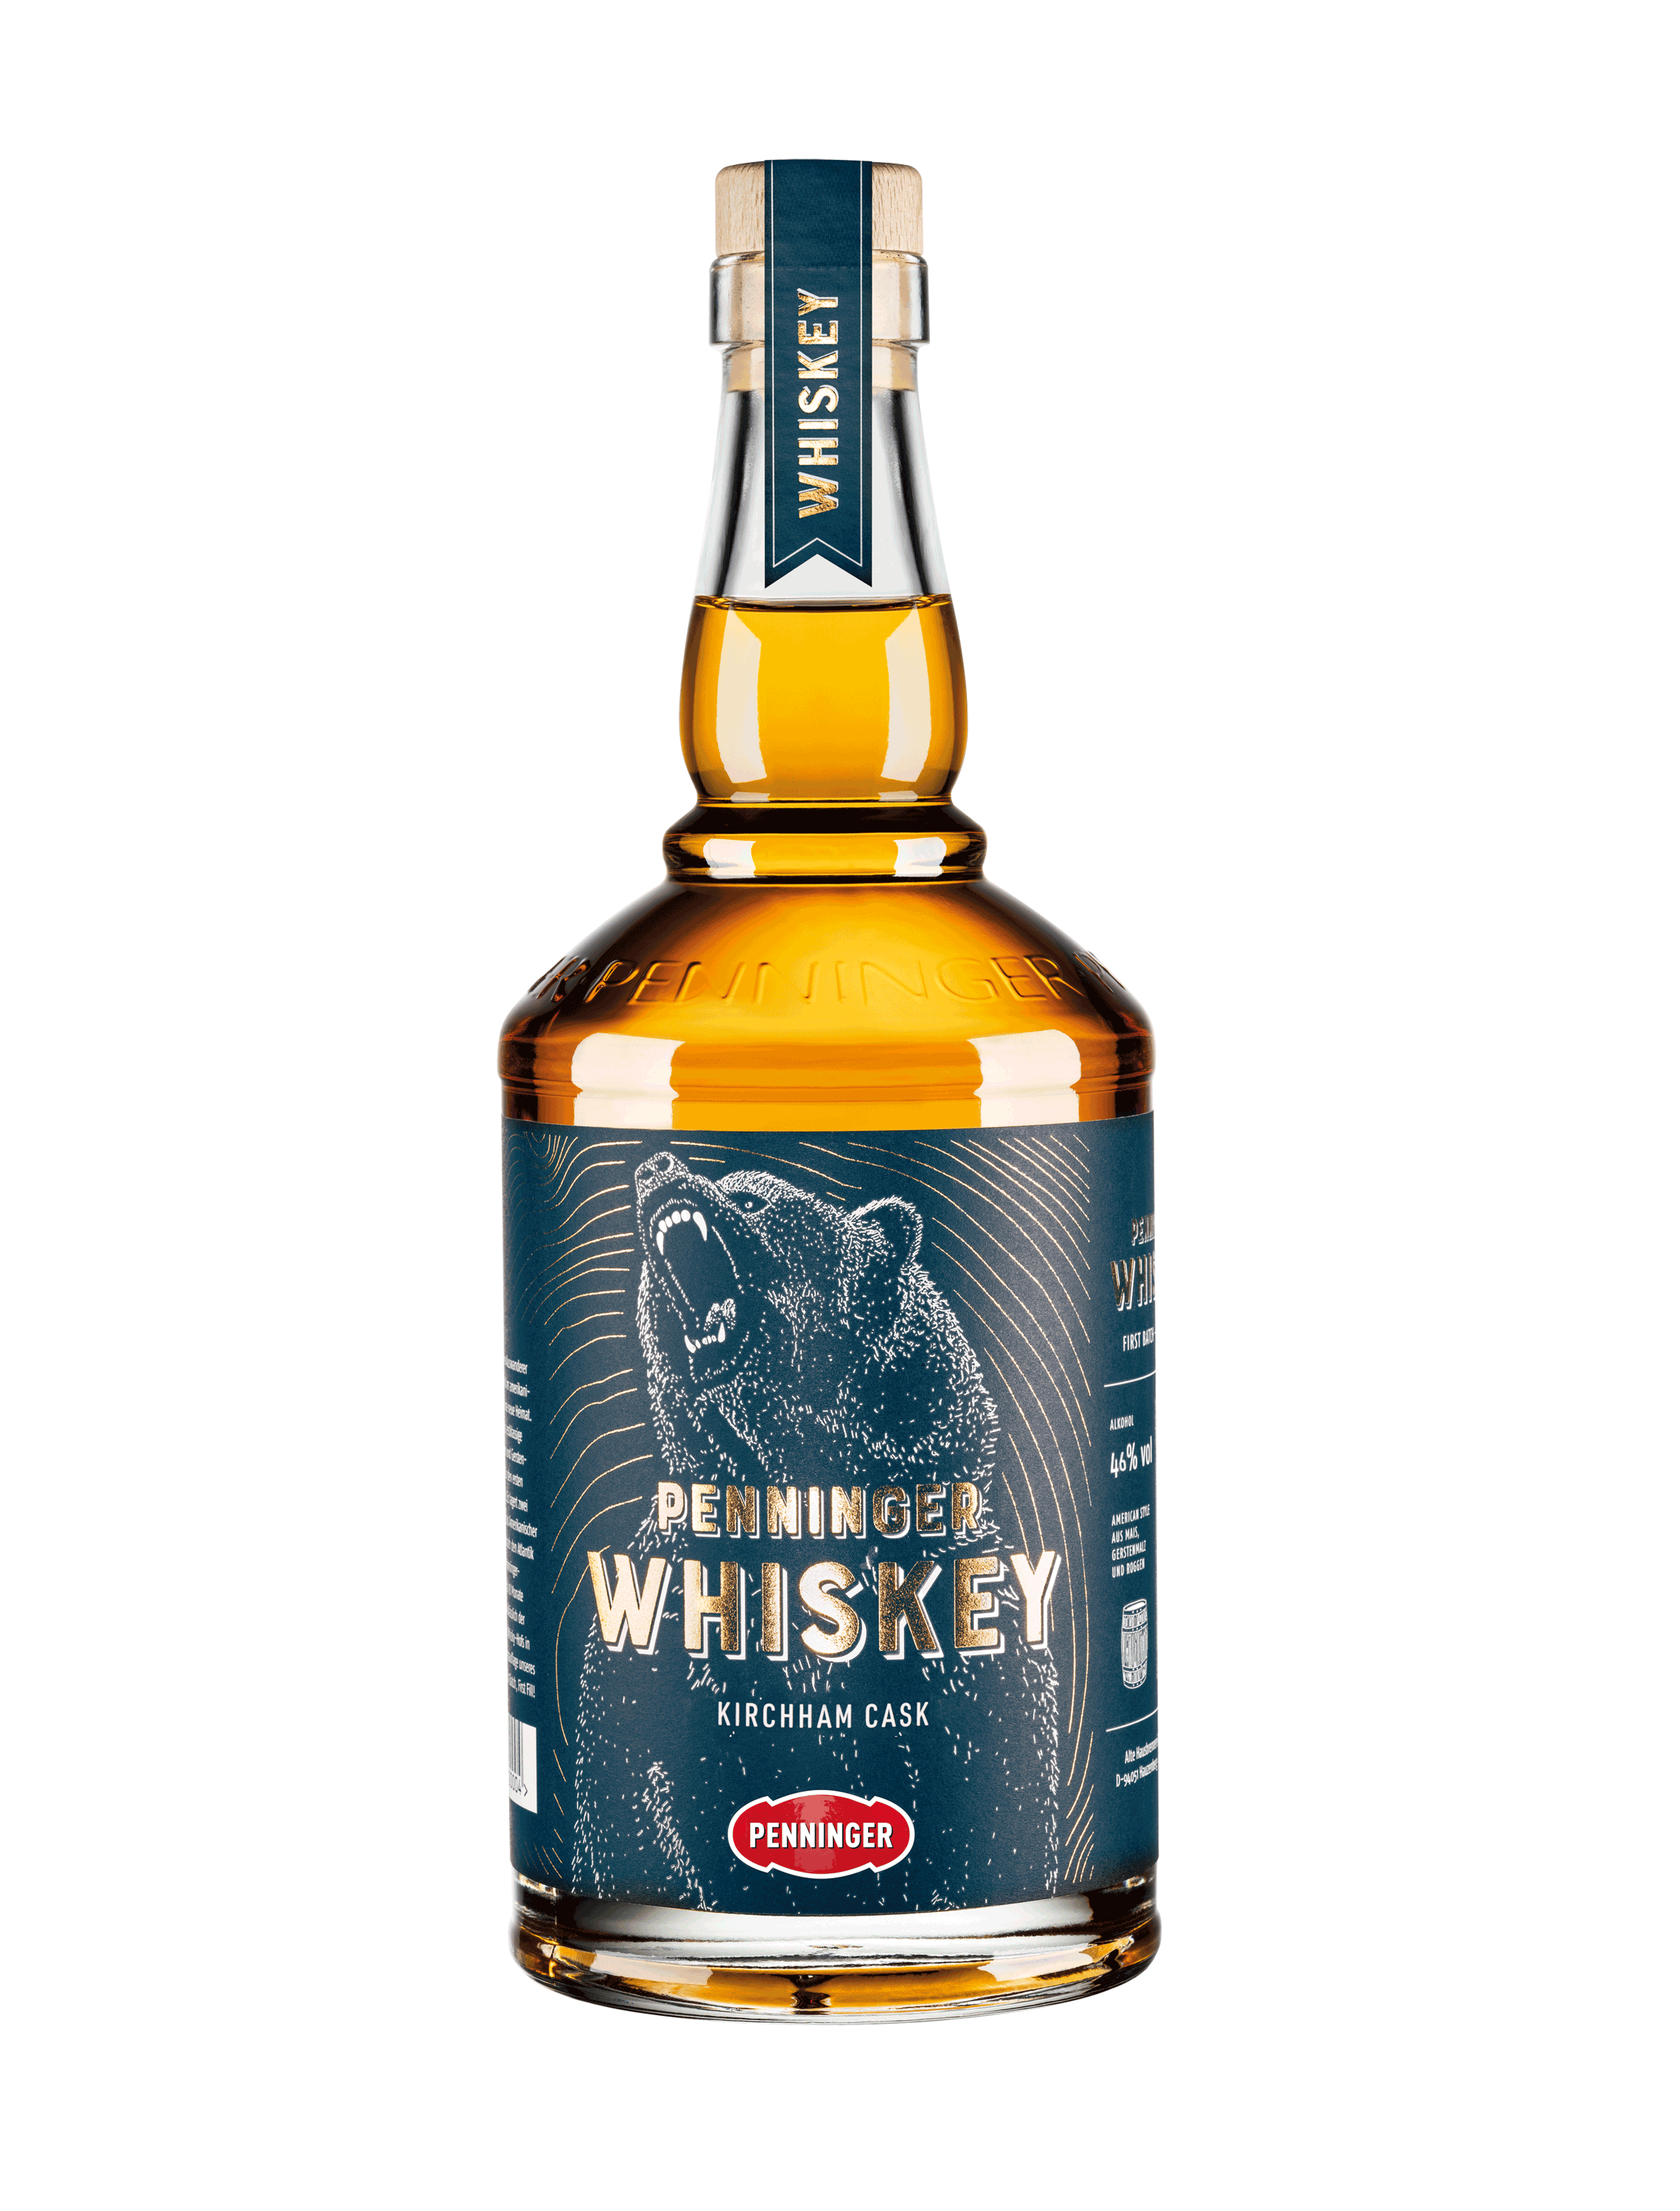 Penninger Whiskey - Kirchham Cask 46% vol